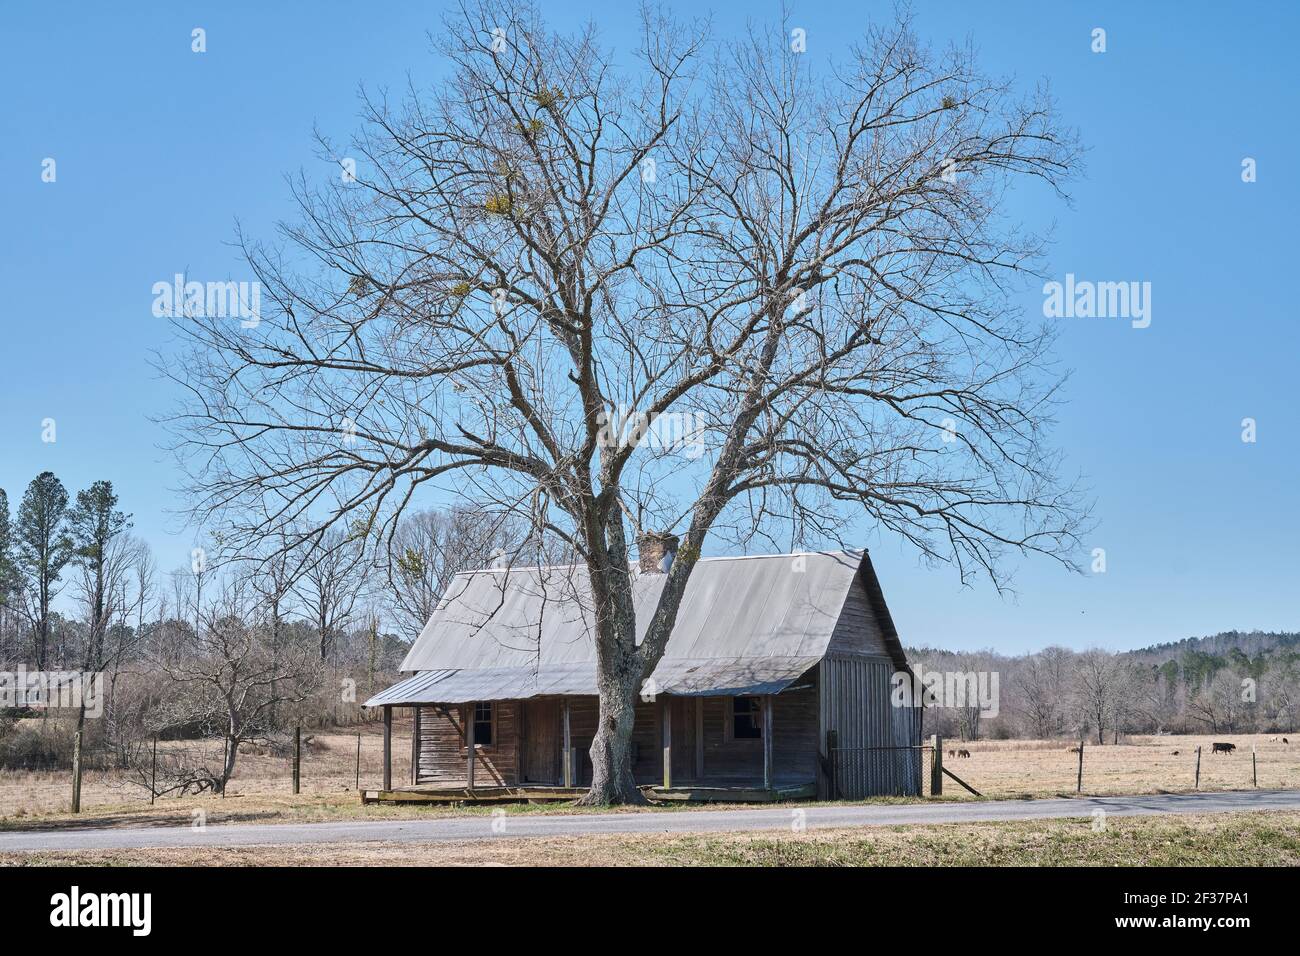 Ancien chalet en bois de pionnier abandonné avec une véranda couverte, dans la campagne de l'Alabama, États-Unis. Banque D'Images